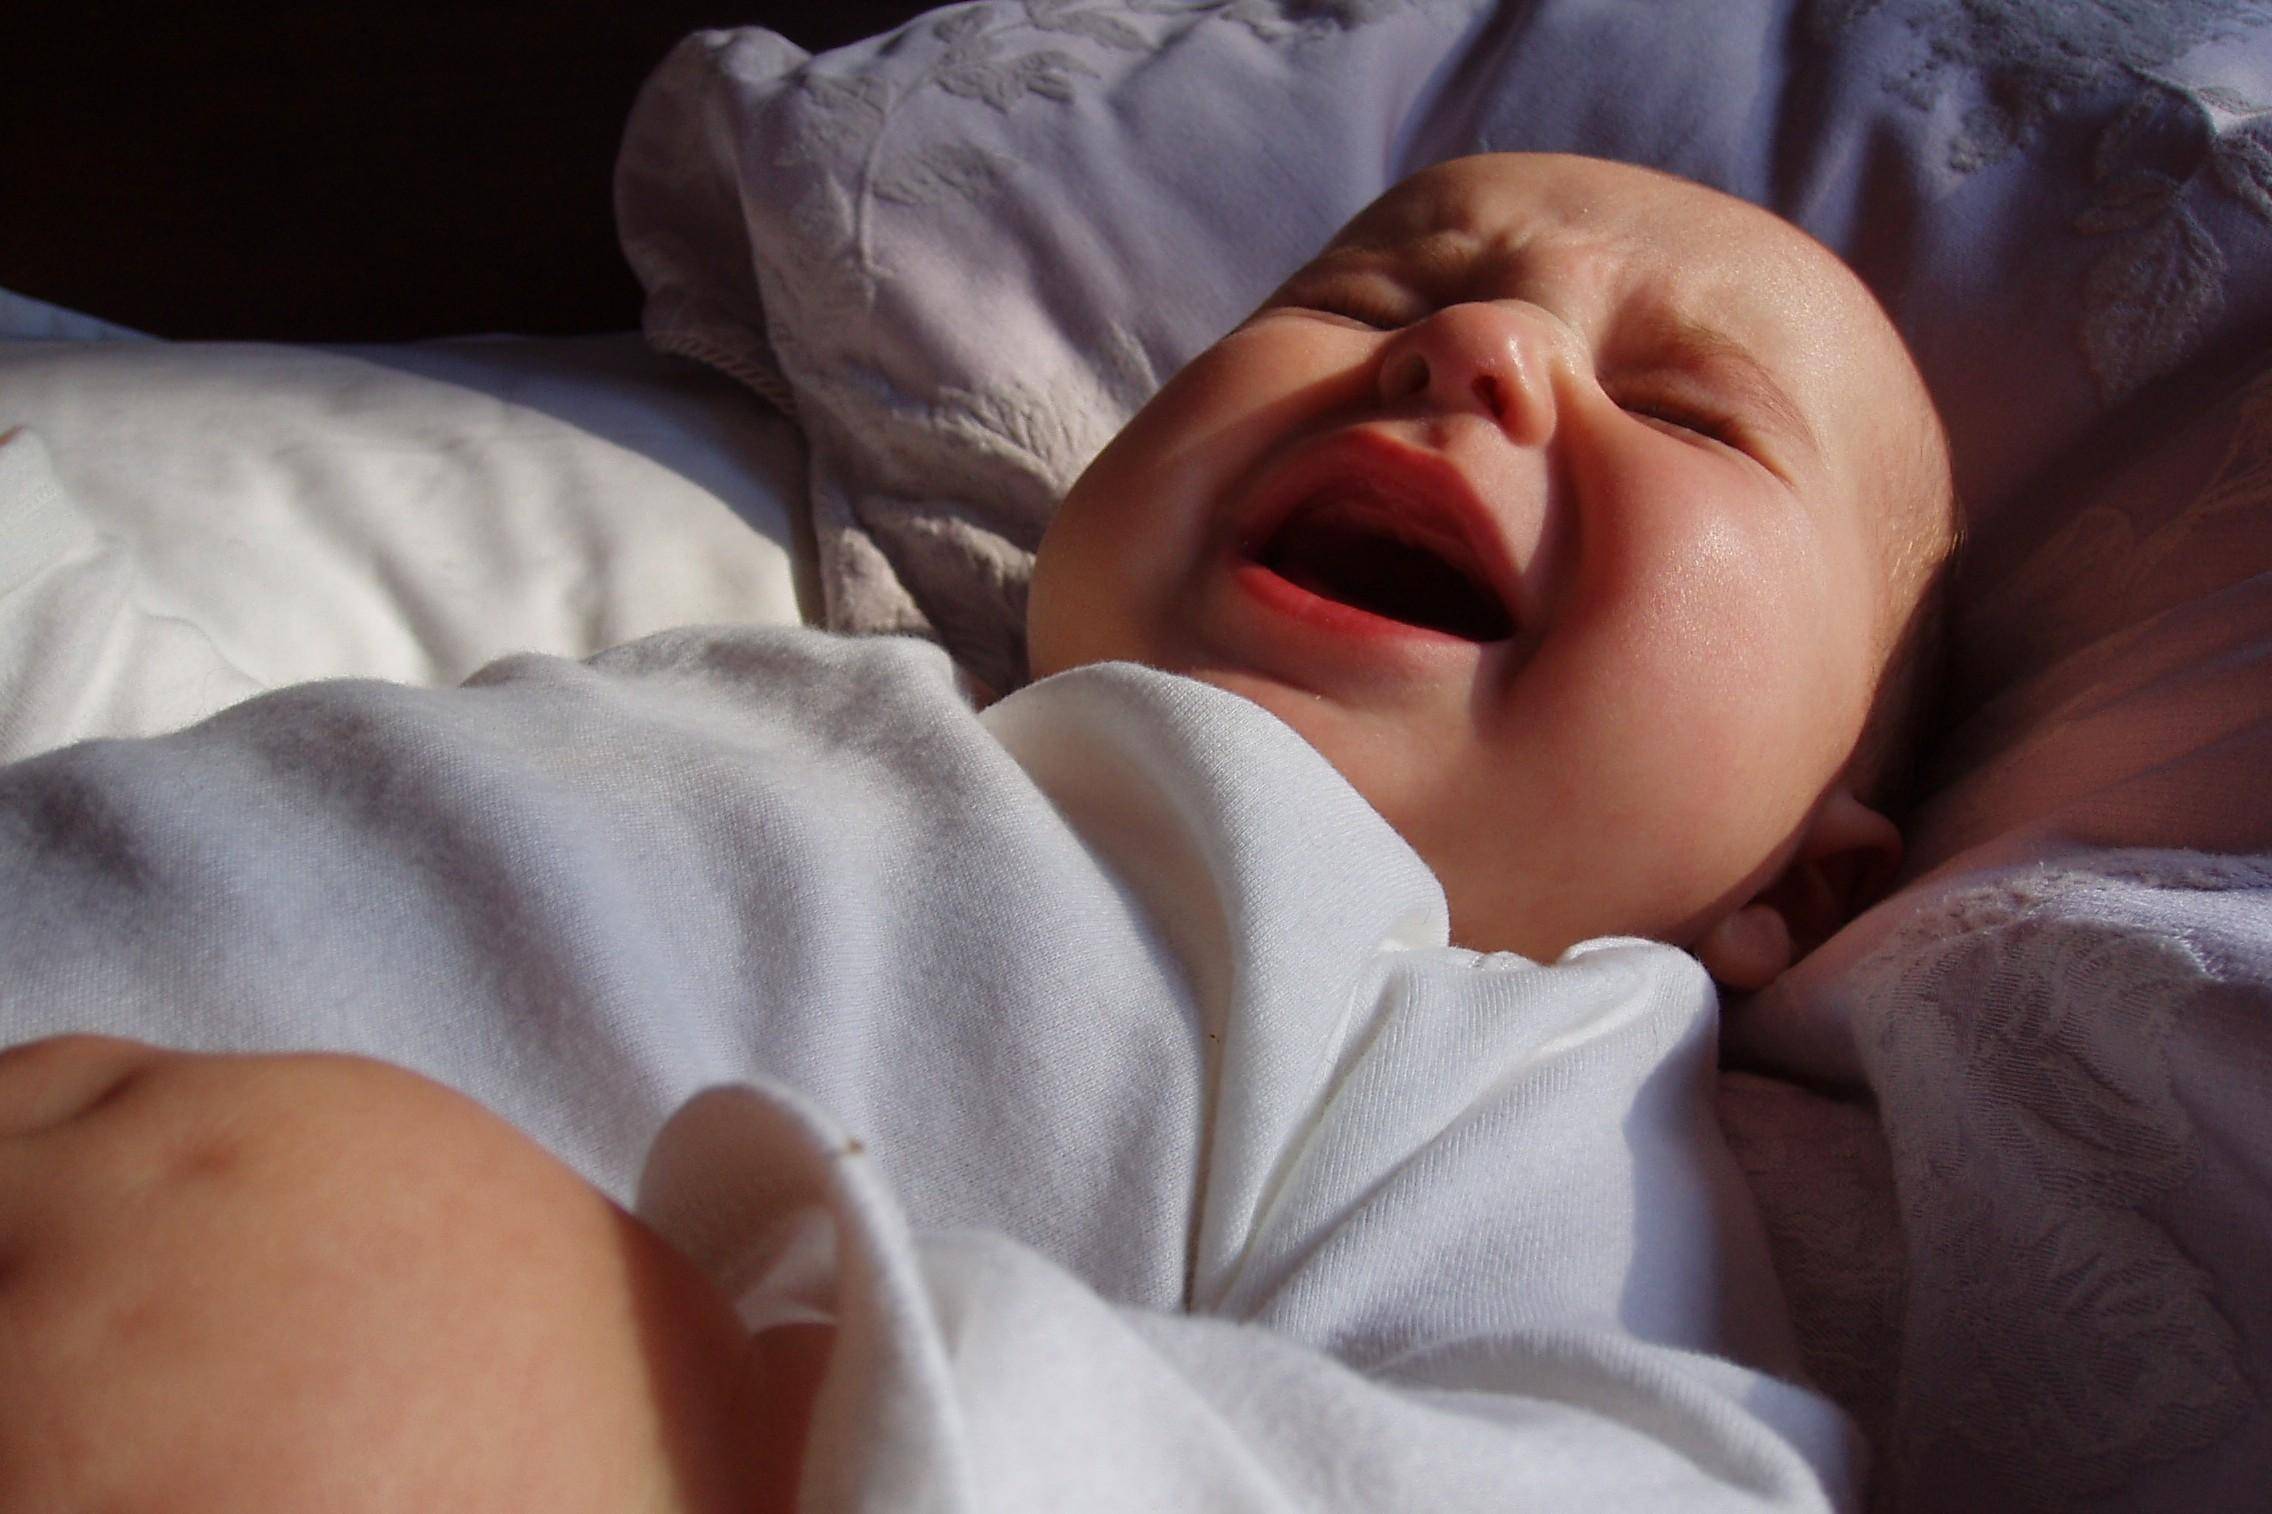 Новорожденный вздрагивает во сне | уроки для мам